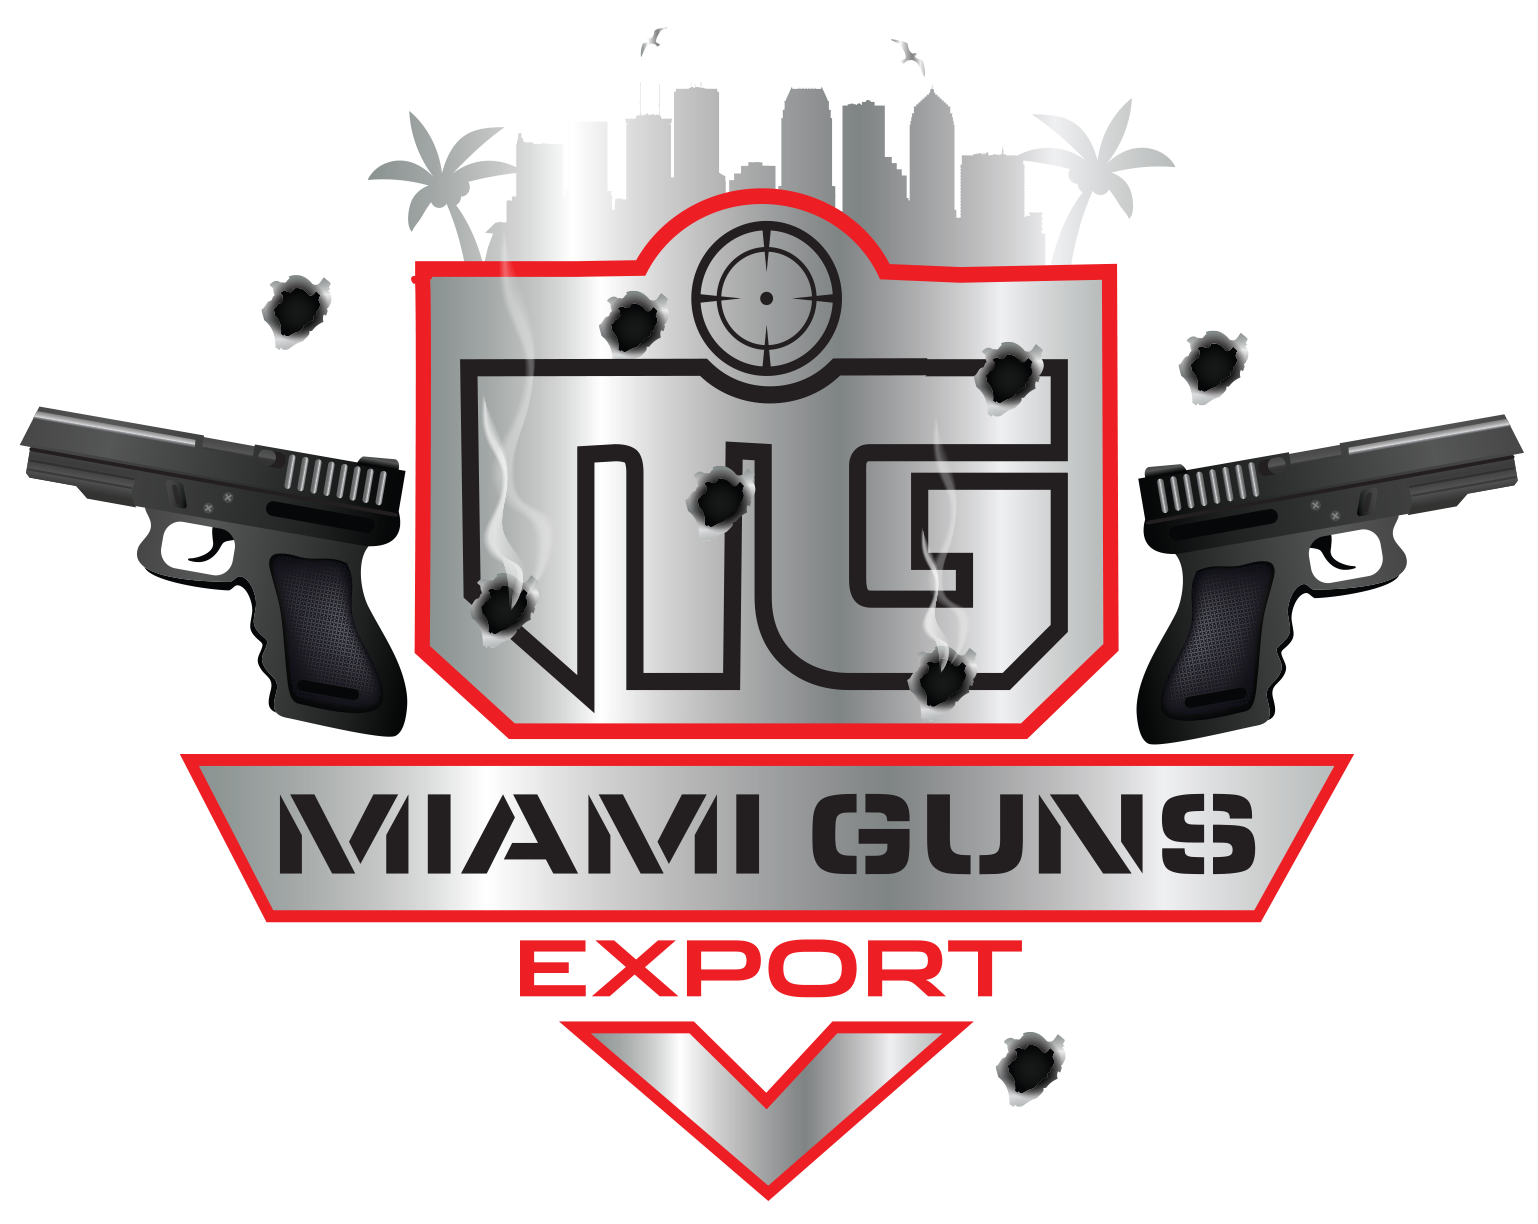 Miami Guns Export – Migration